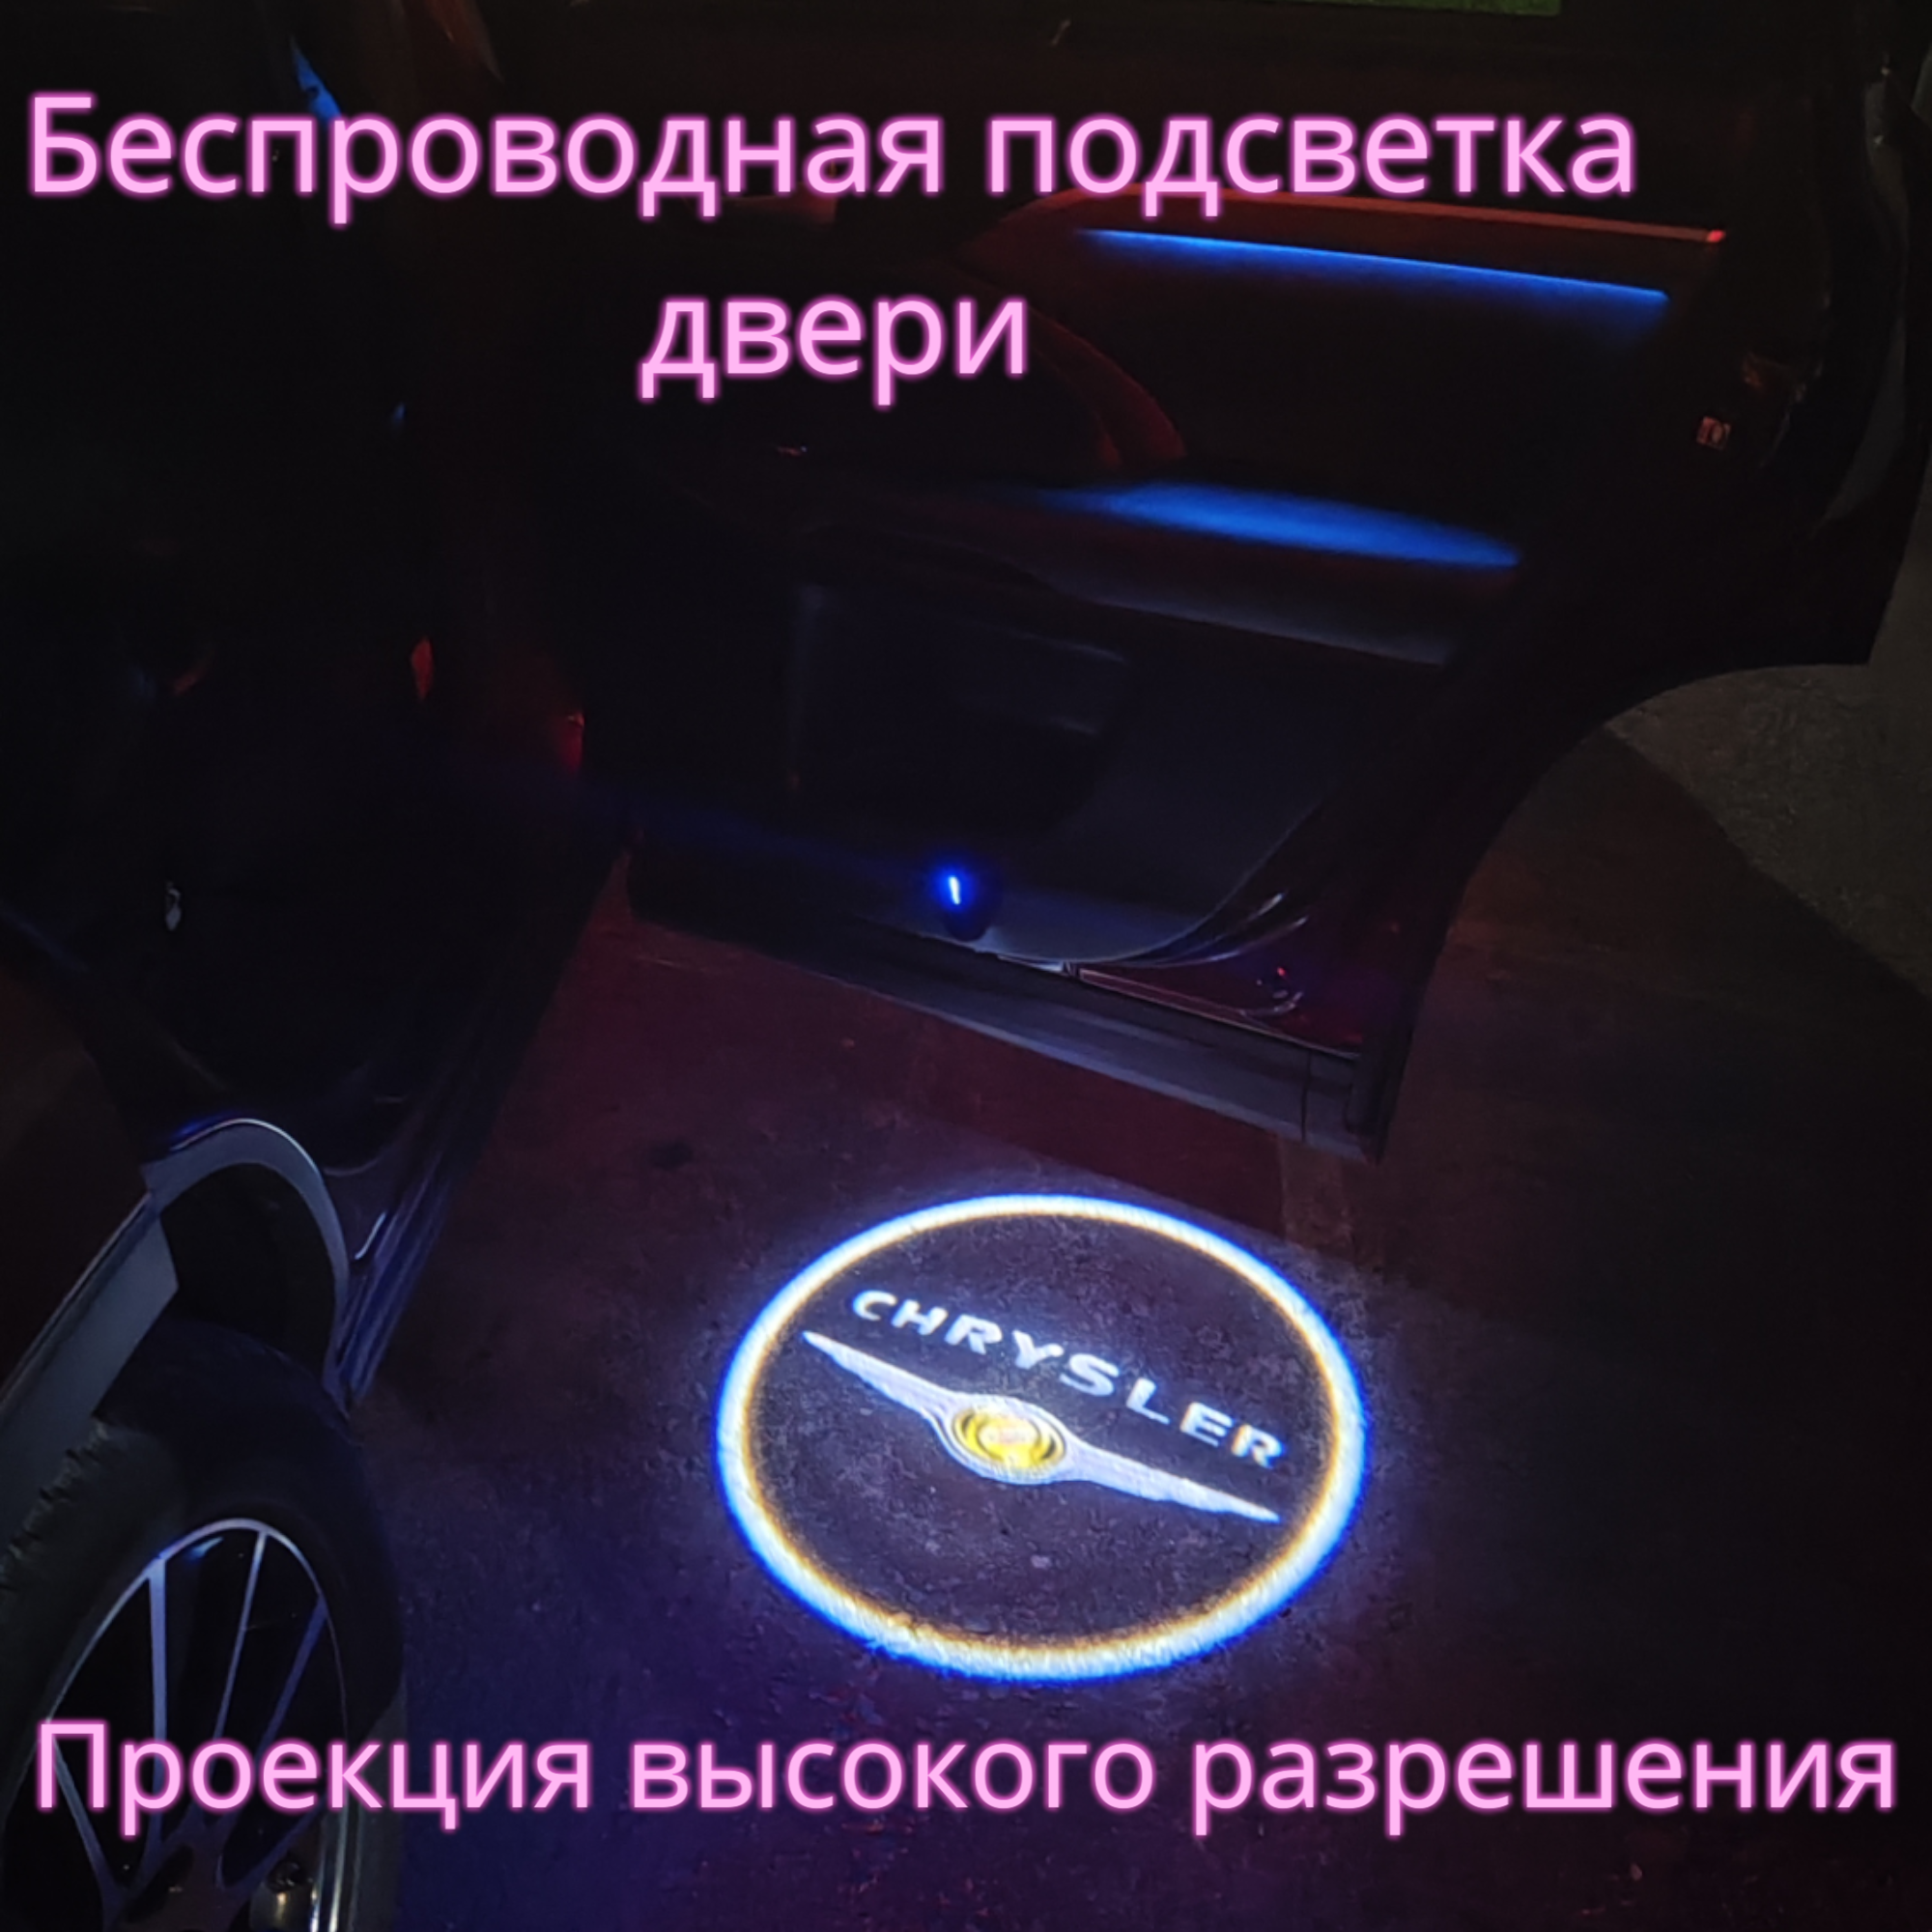 Проекция логотипа авто/Беспроводная подсветка логотипа Chrysler на двери/Светильник высокого разрешения с двери авто (1 шт.)